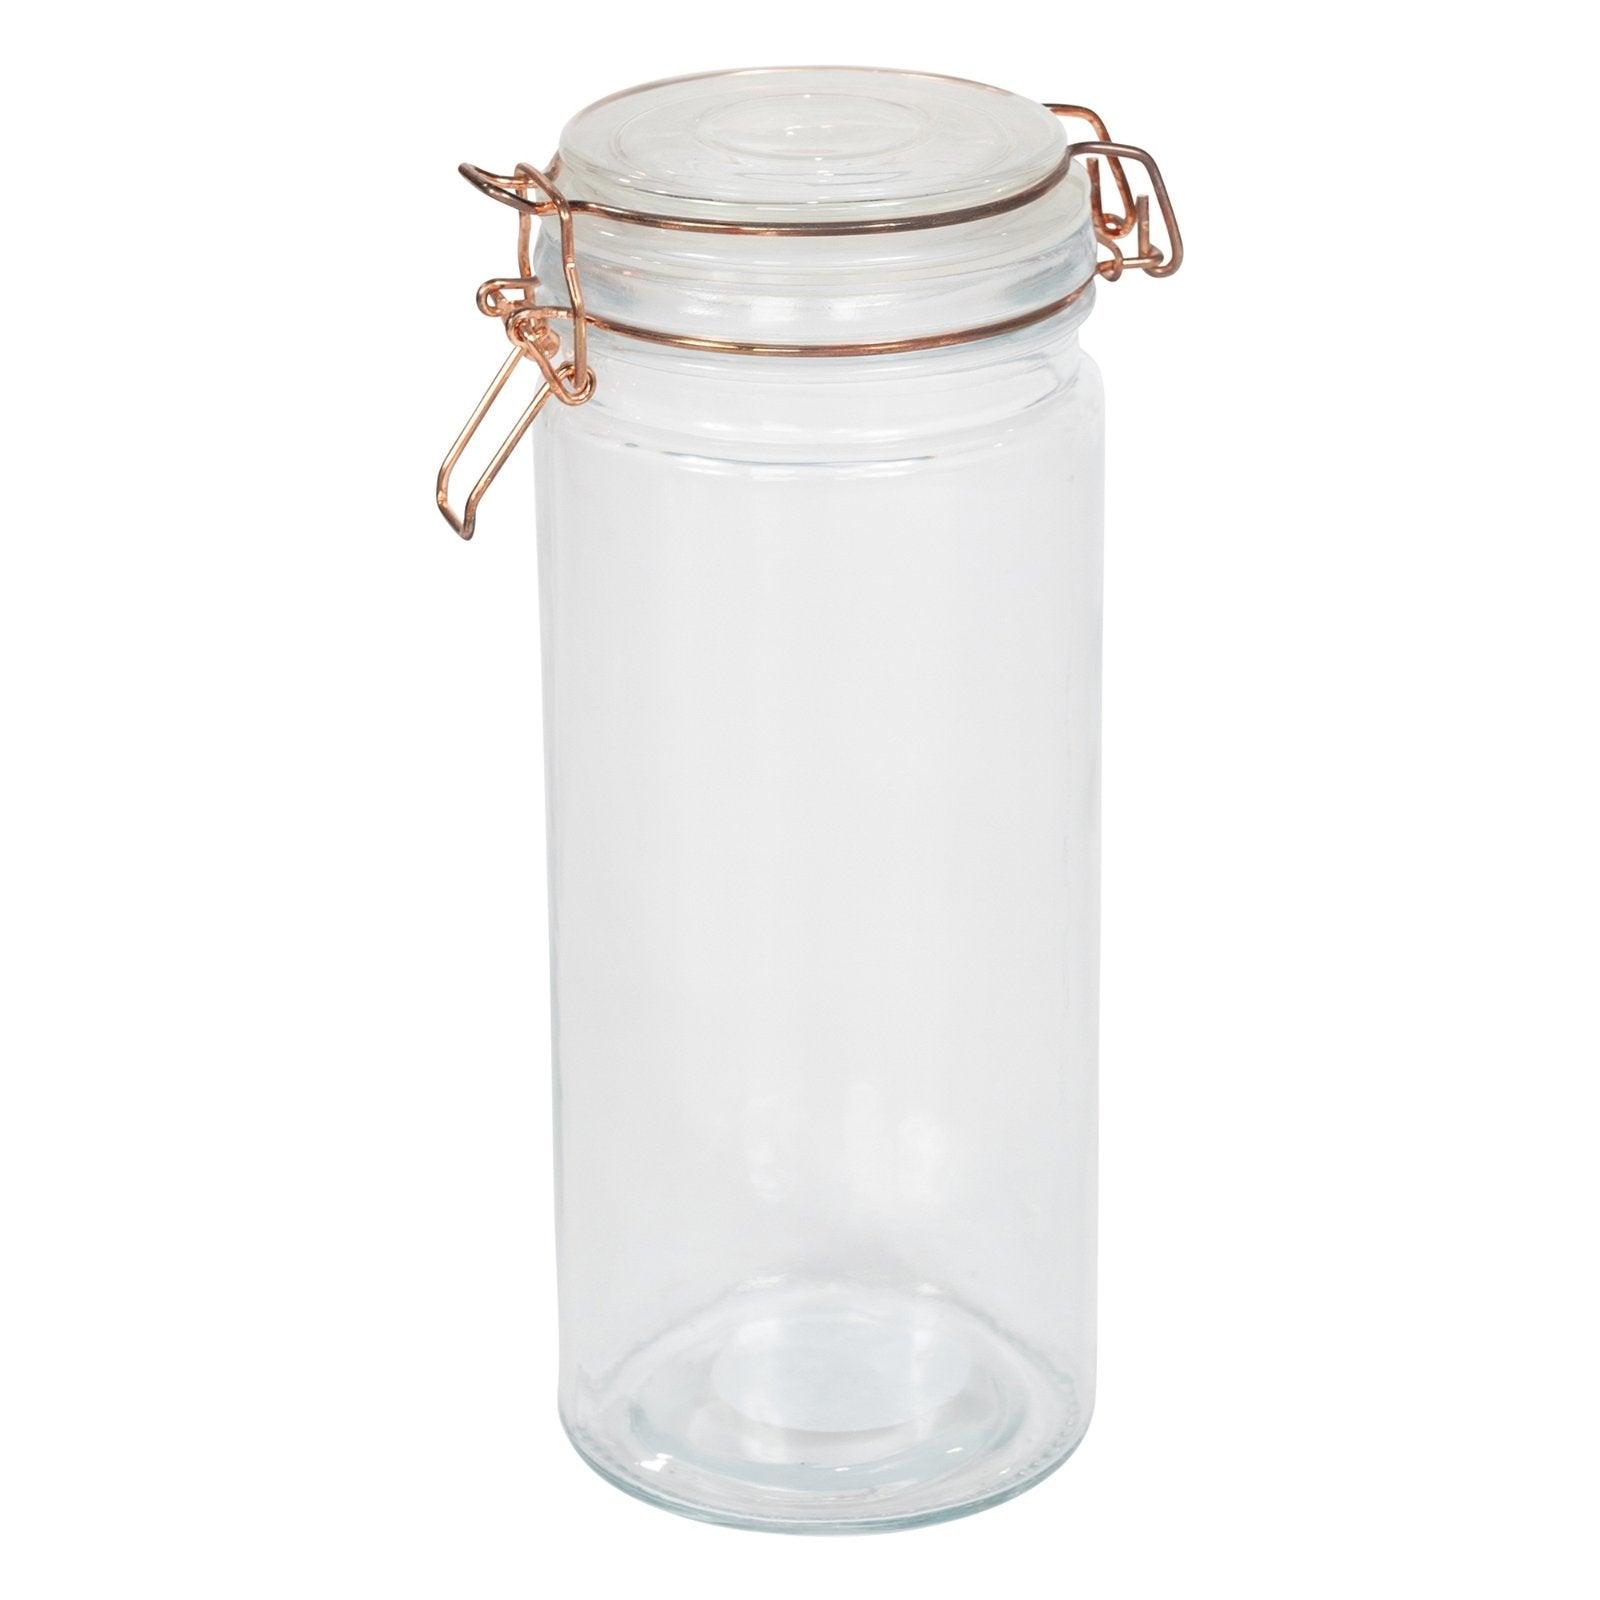 View Kitchen Storage Jar With Copper Clip 25cm information